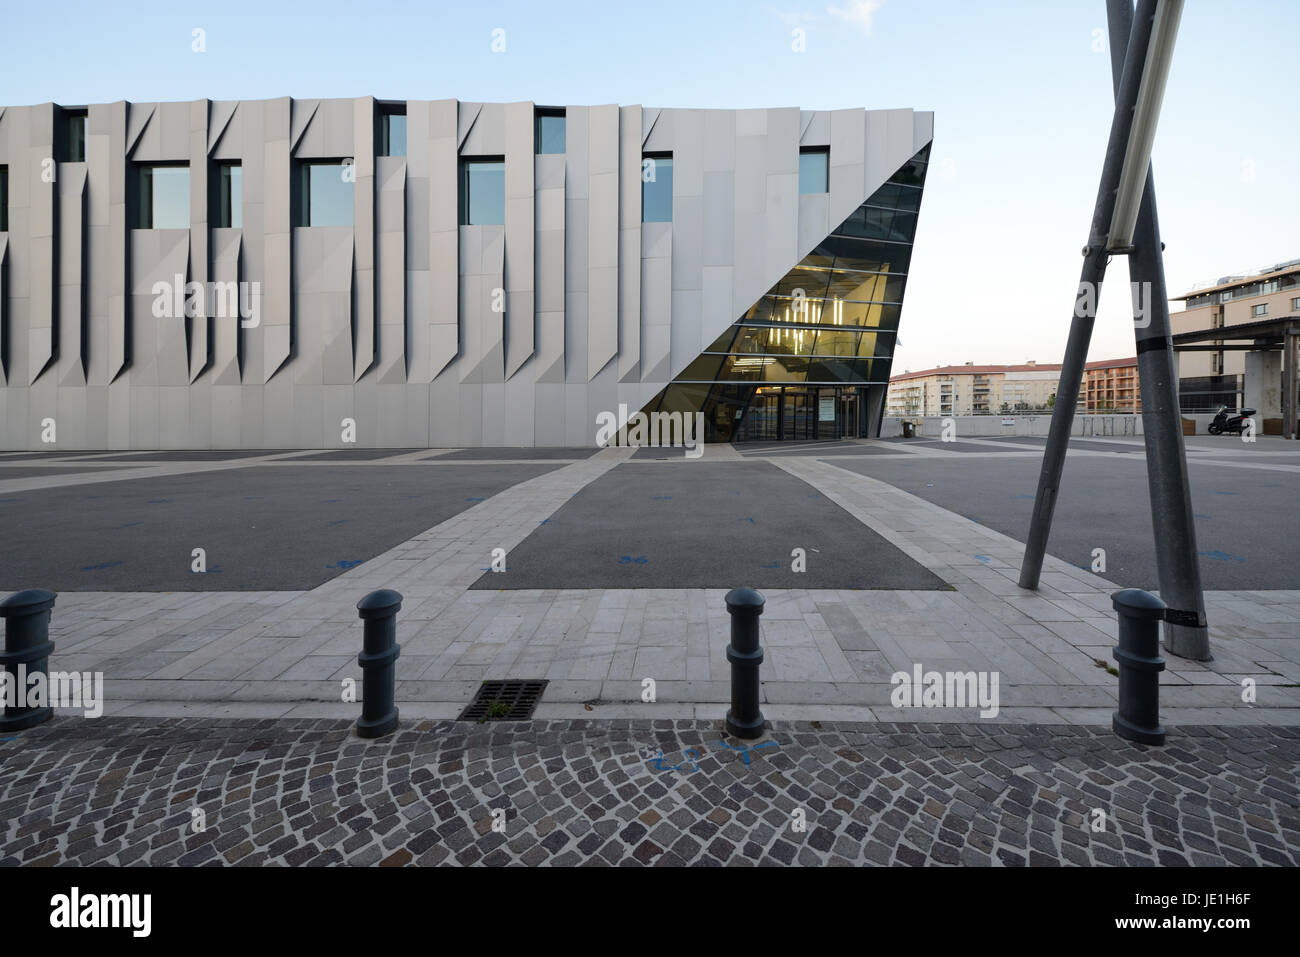 Conservatoire de Musique oder die Musik Konservatorium Darius Milhaud (Comp 2013) entworfen von japanischen Architekten Kengo Kuma Aix-en-France Stockfoto